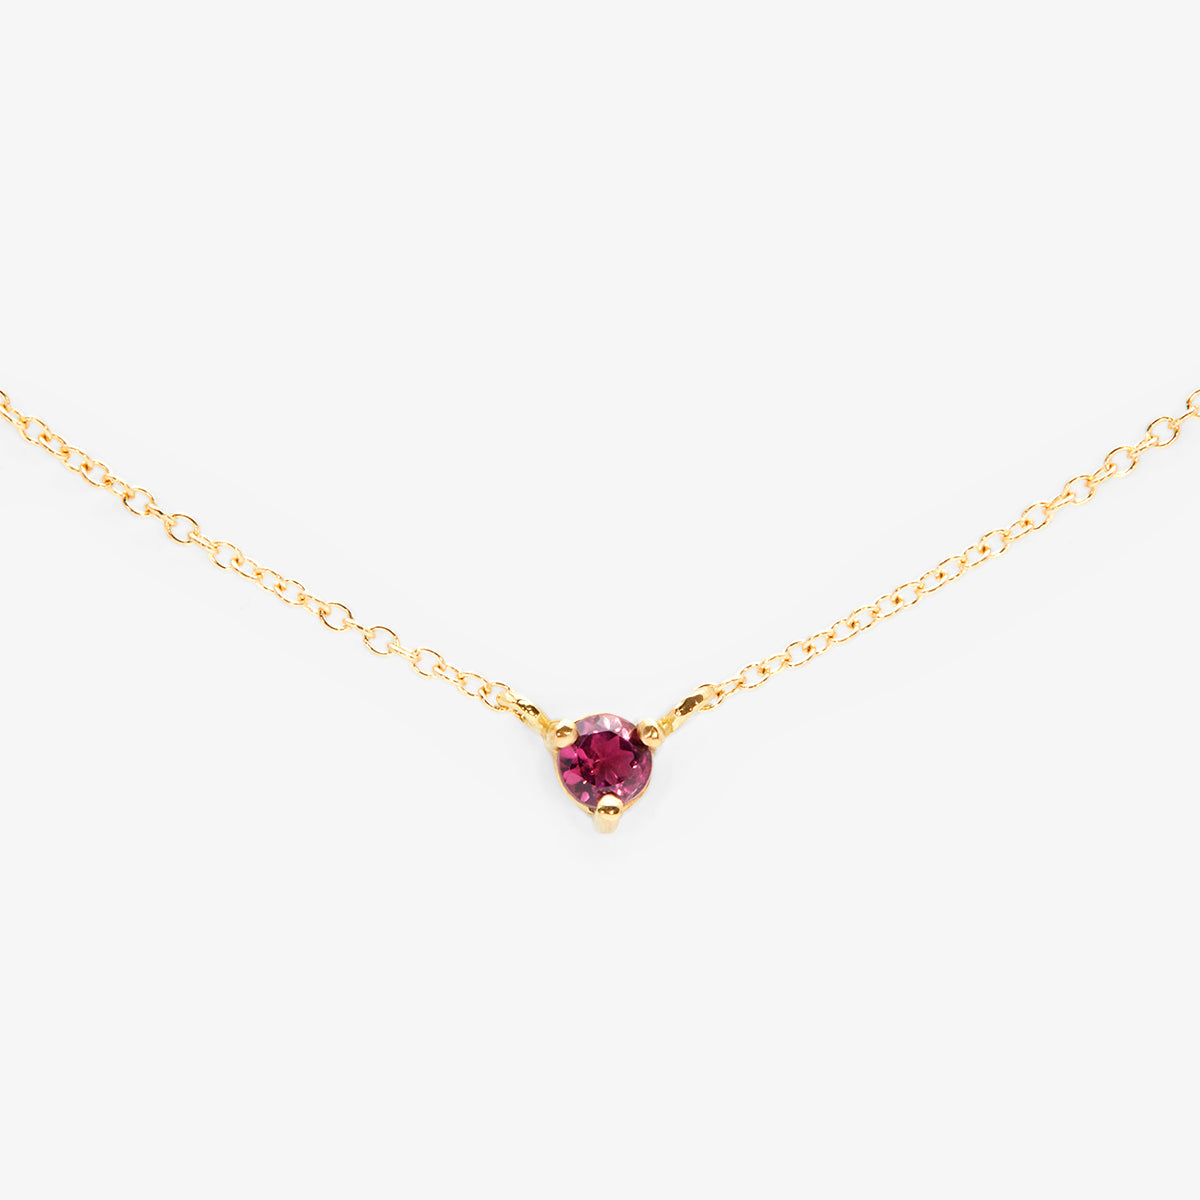 3mm Pink Tourmaline Birthstone Necklace